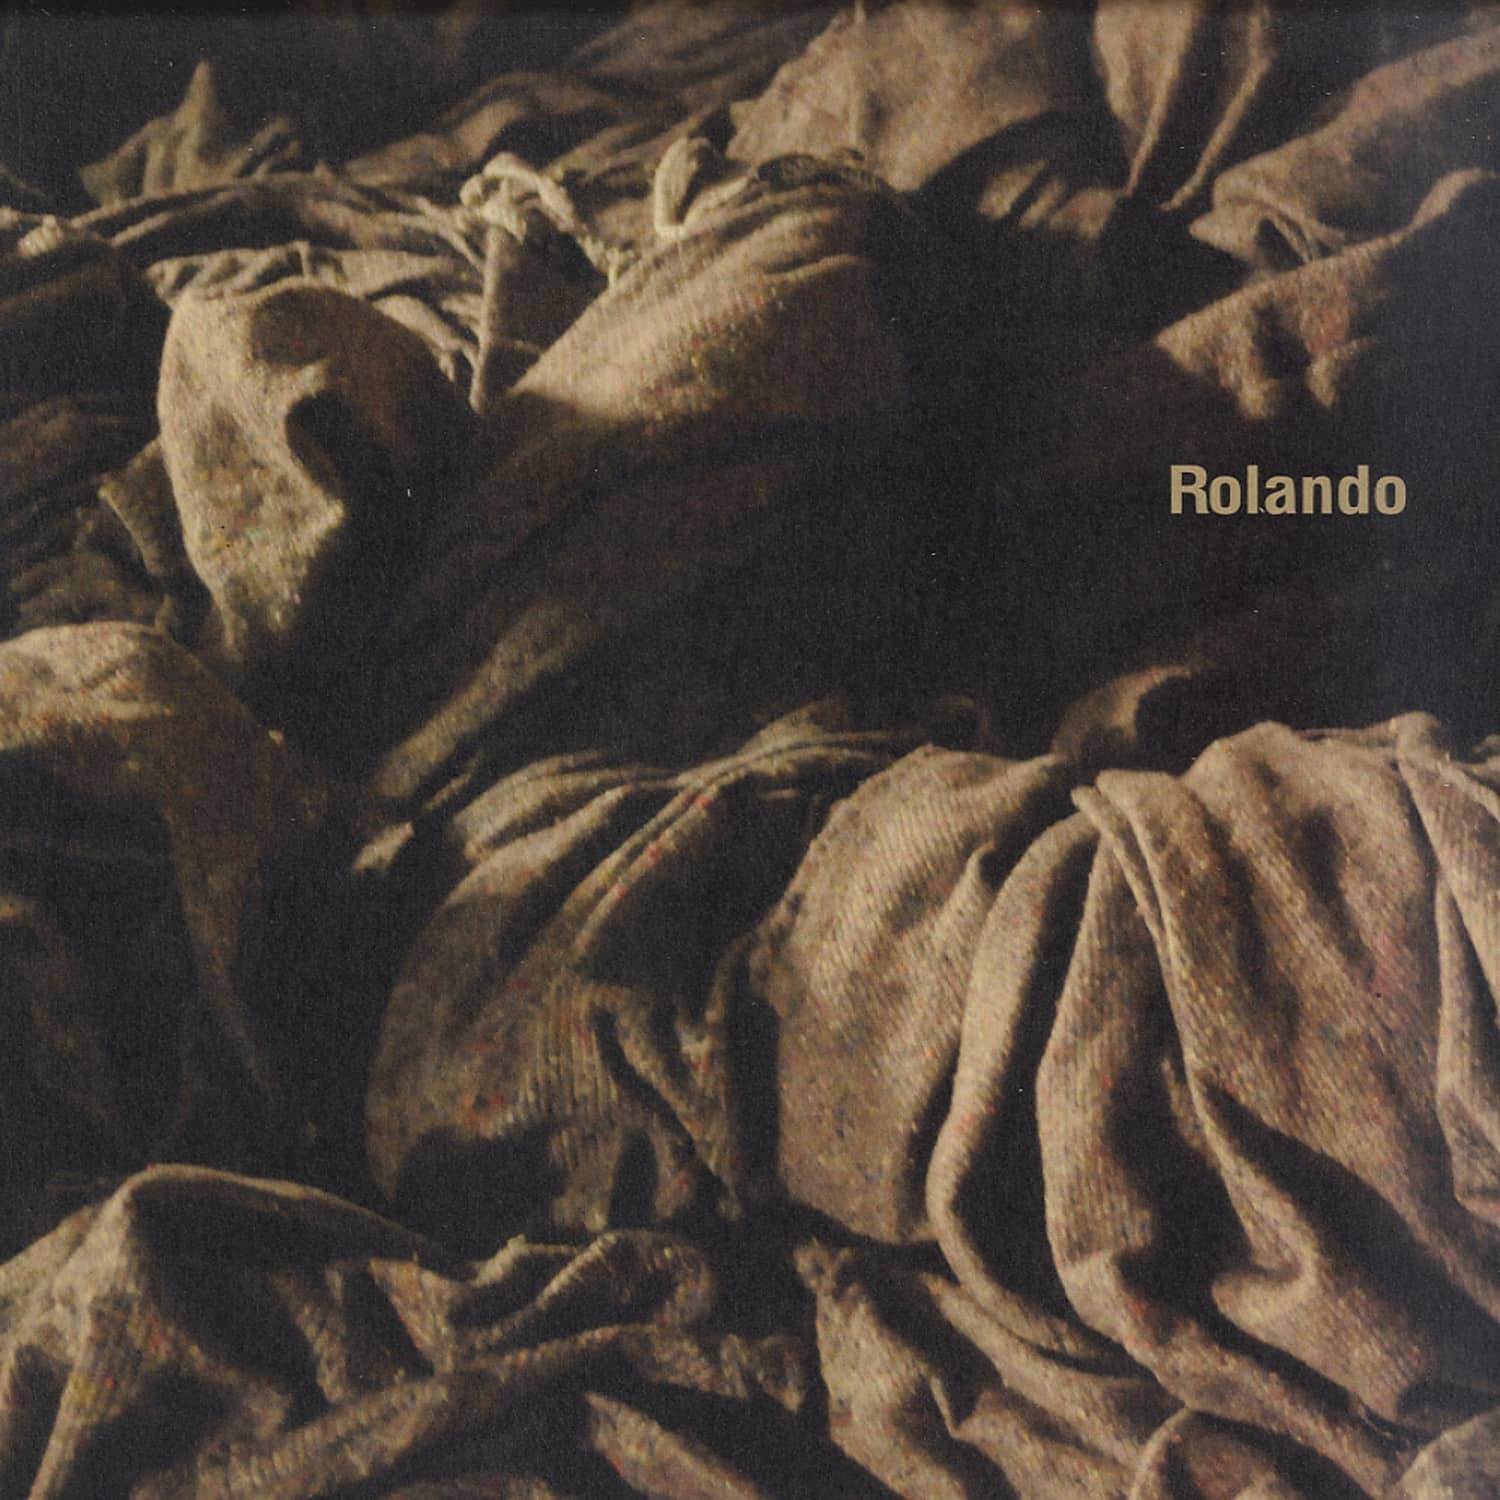 Rolando - 5 TO 8 EP